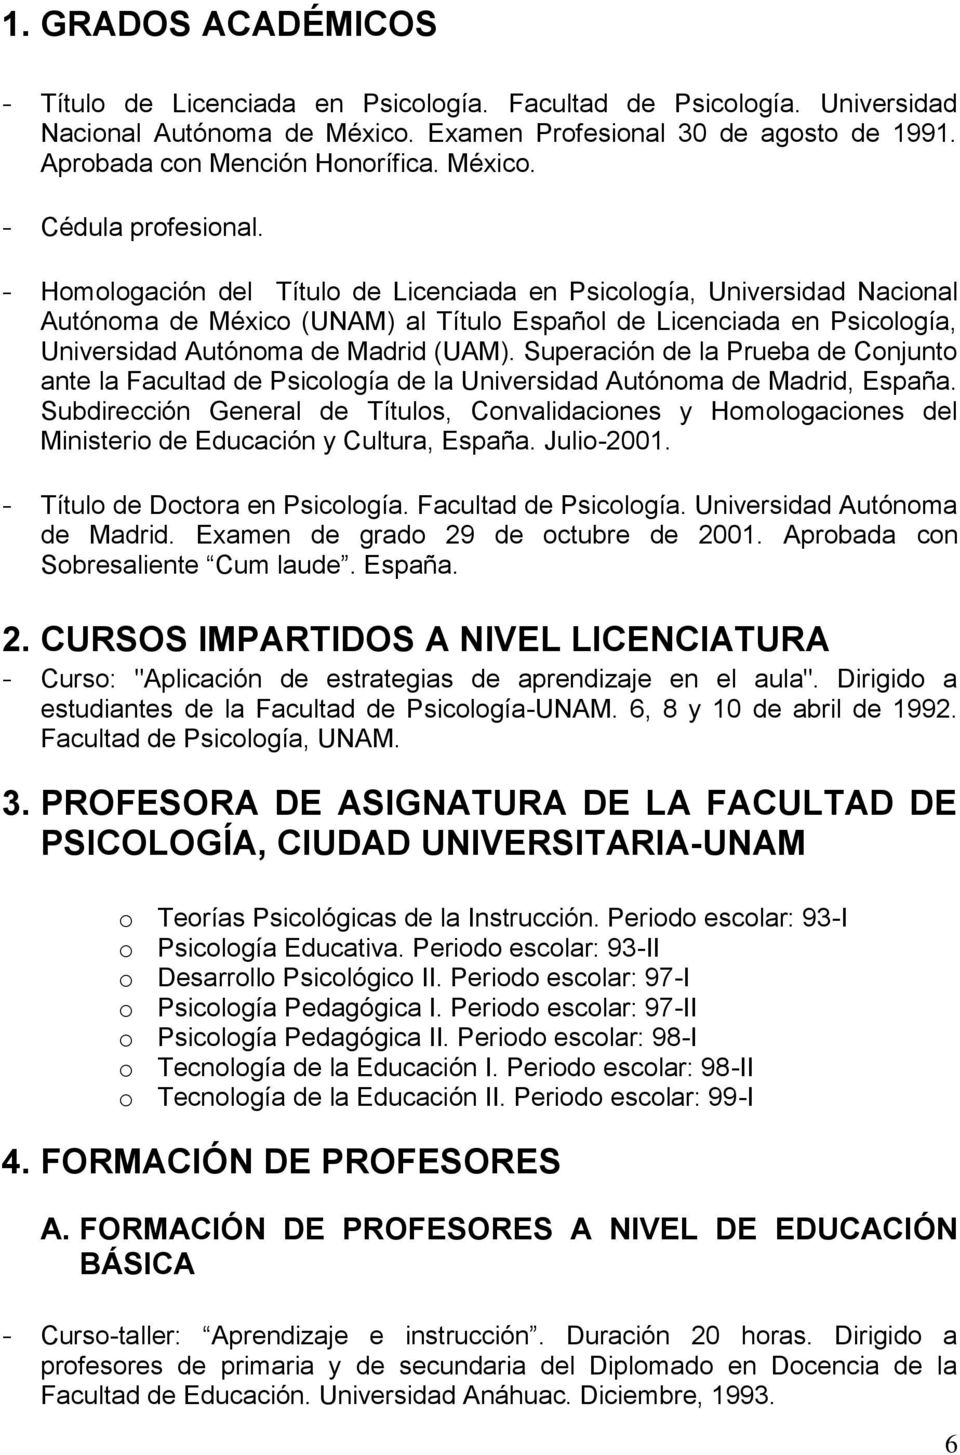 - Homologación del Título de Licenciada en Psicología, Universidad Nacional Autónoma de México (UNAM) al Título Español de Licenciada en Psicología, Universidad Autónoma de Madrid (UAM).